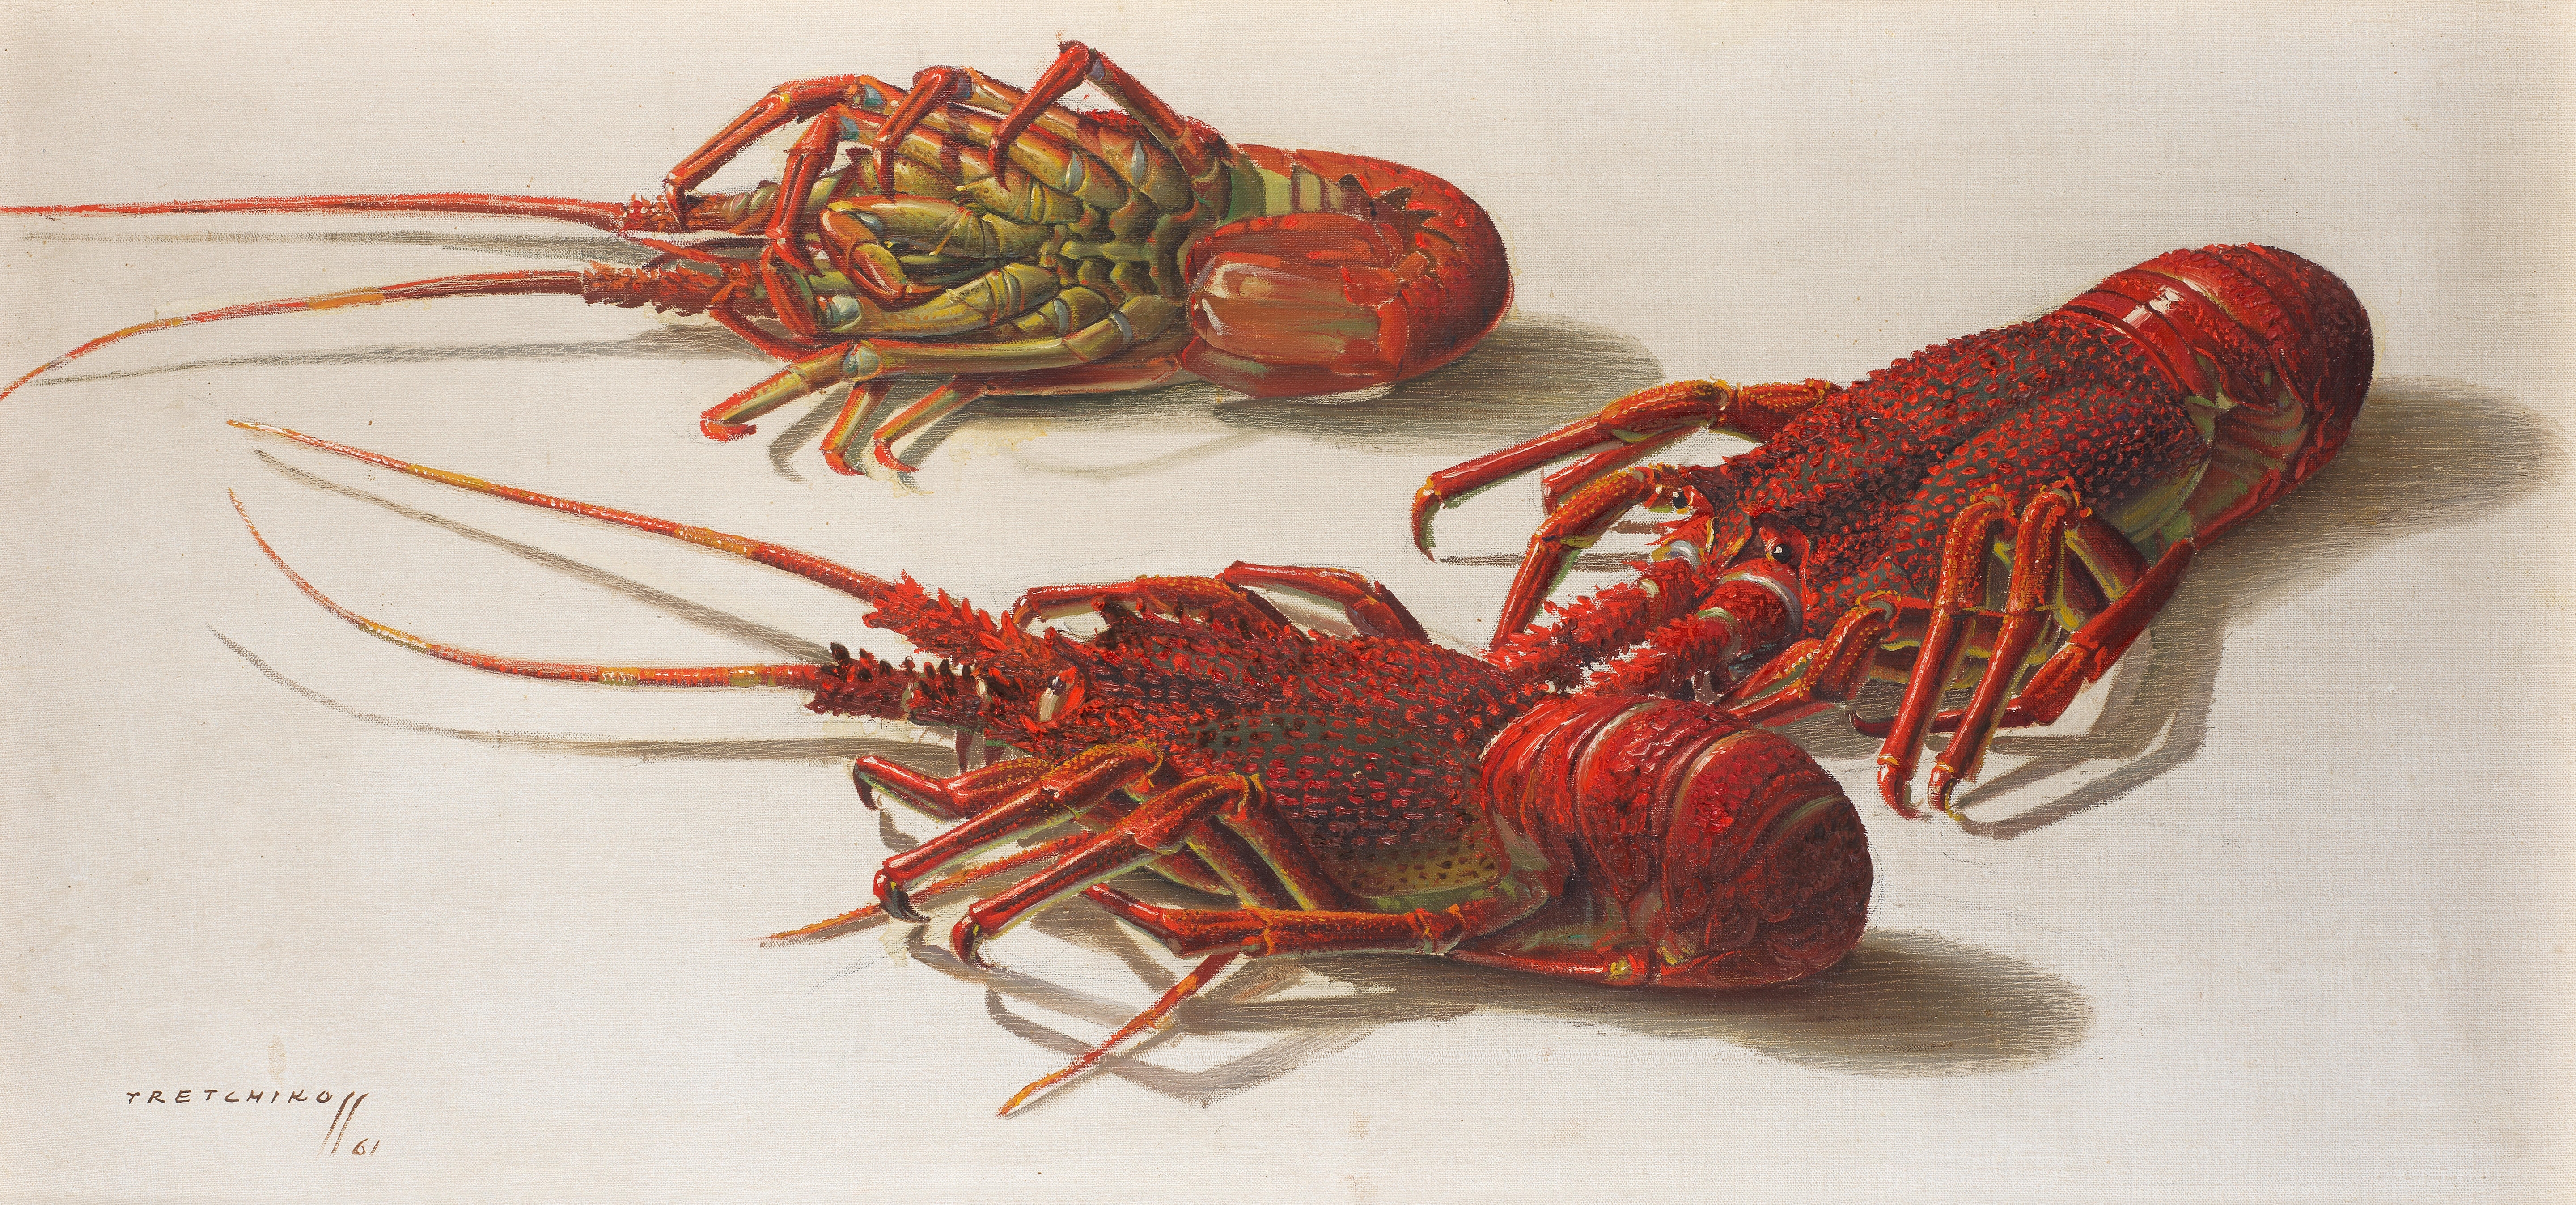 Crayfish - Vladimir Tretchikoff